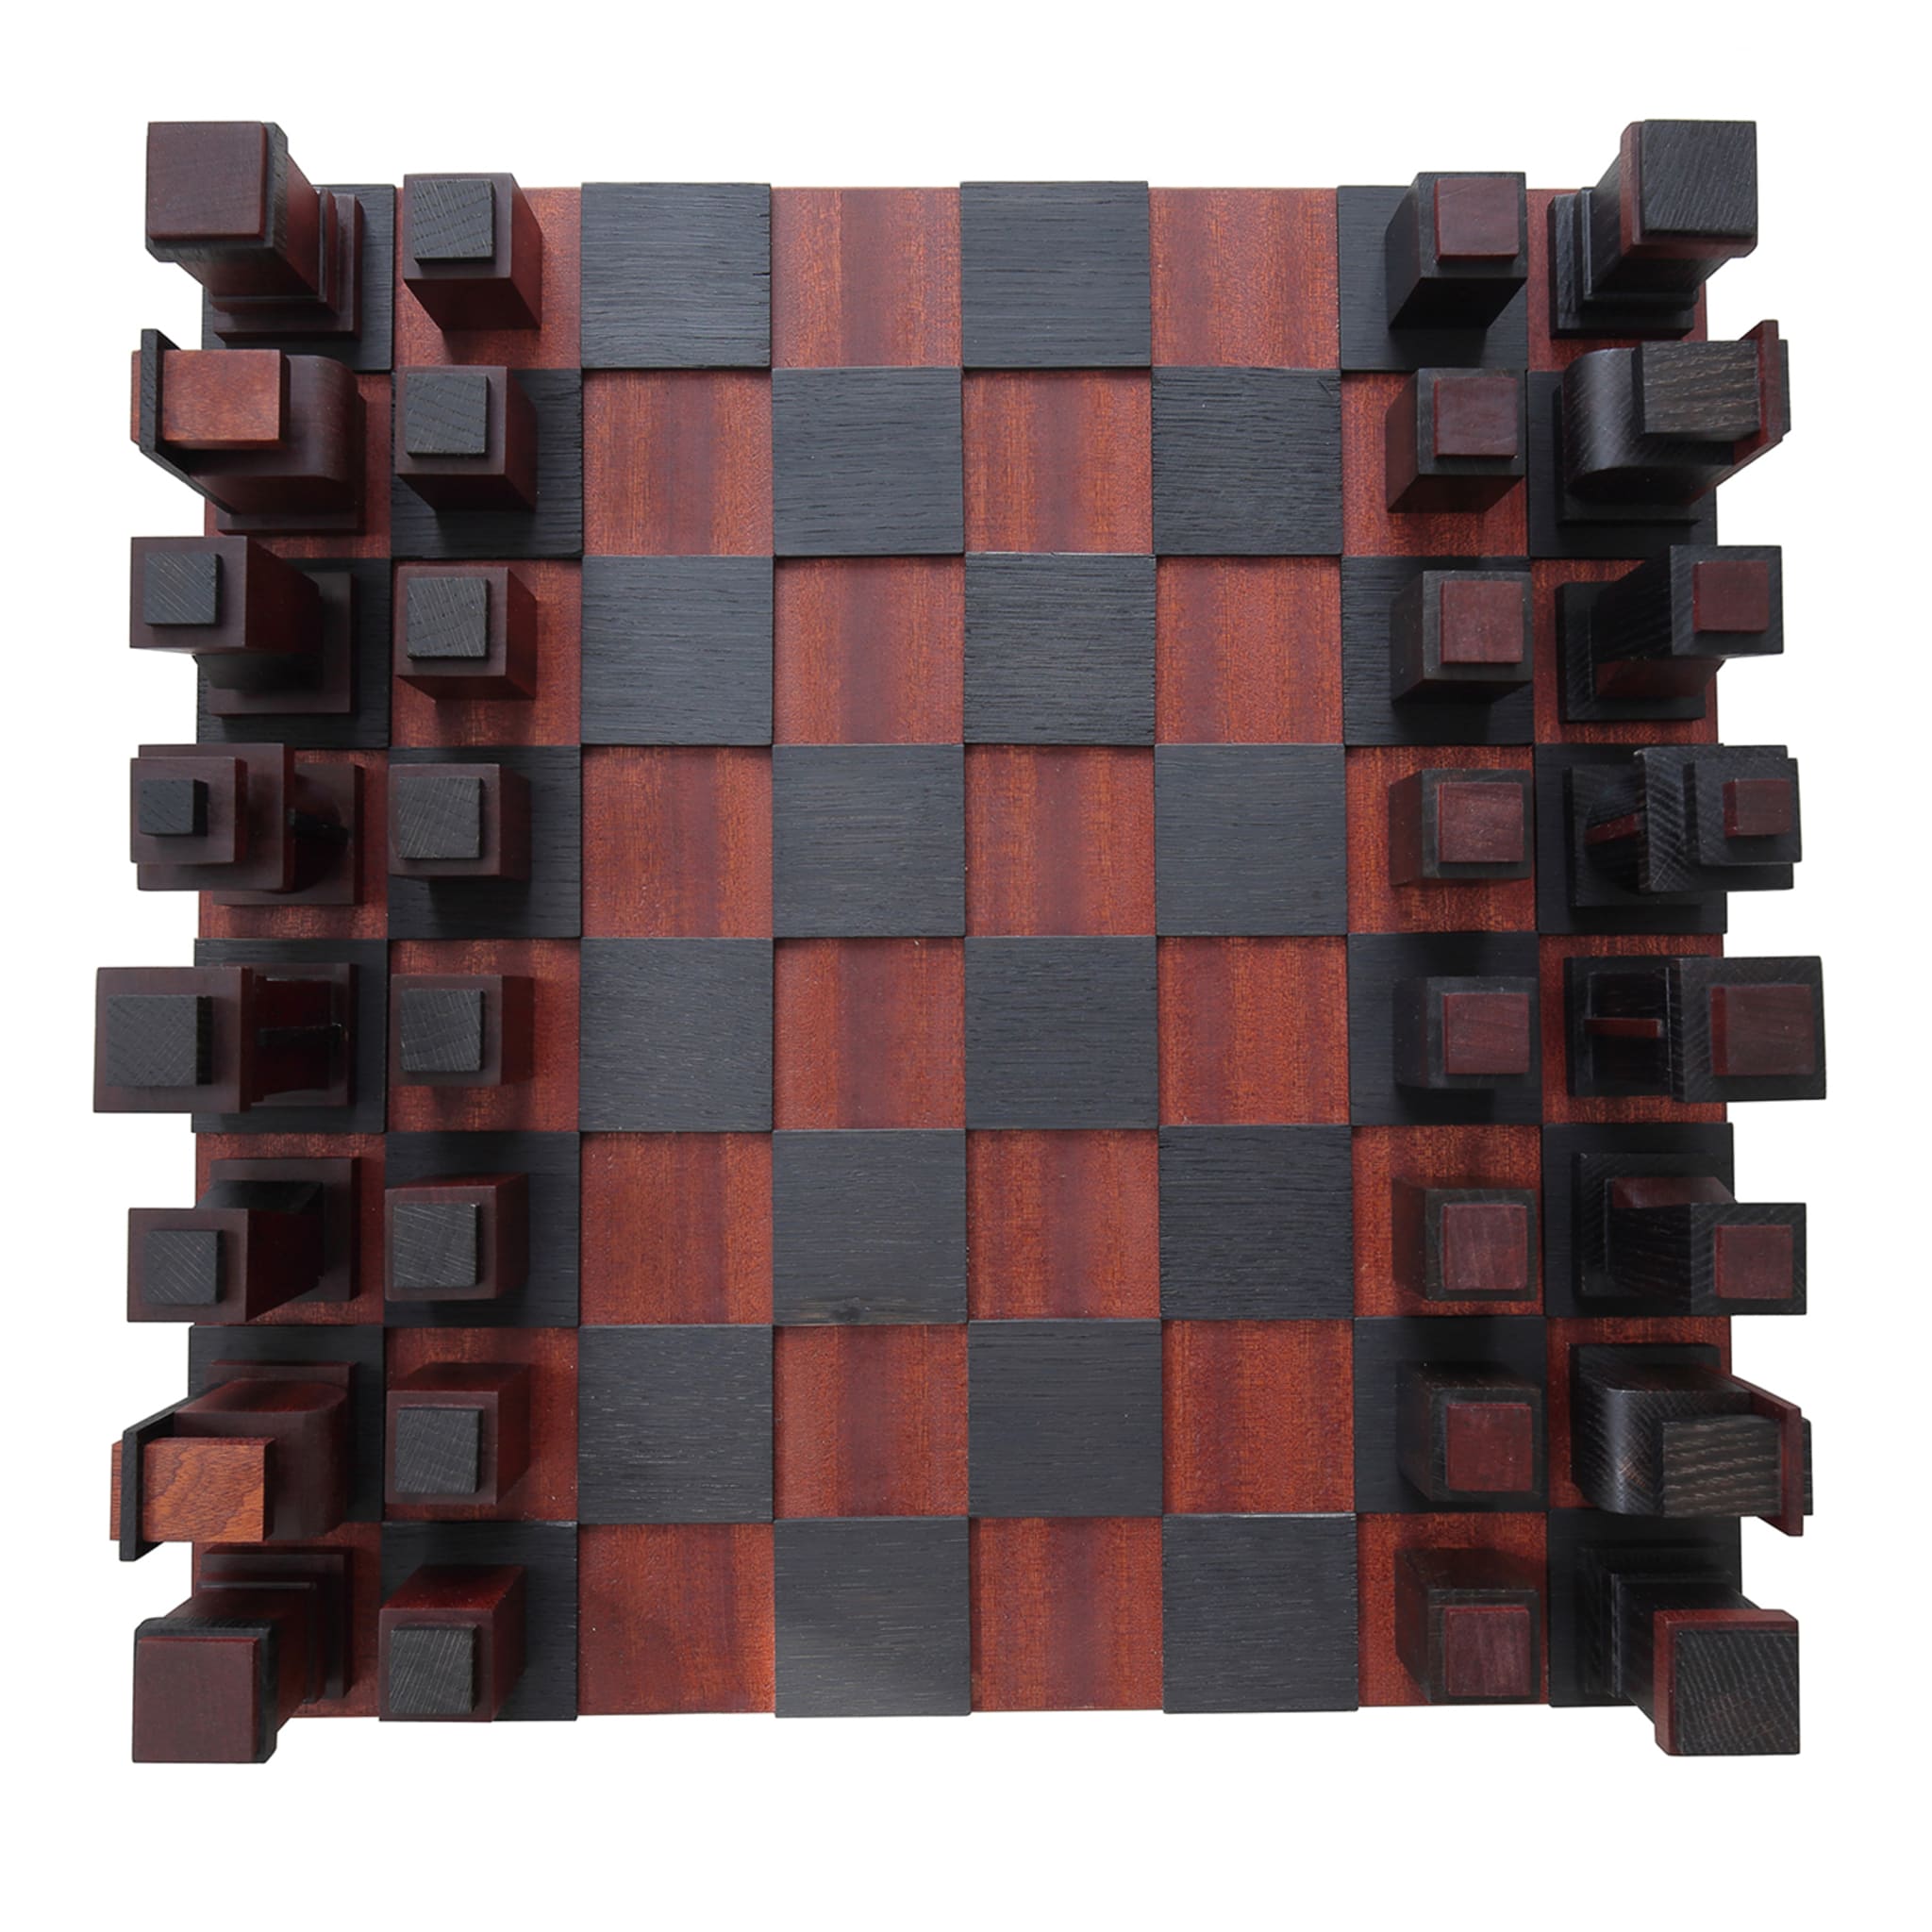 Juego de ajedrez Deodara - Vista principal